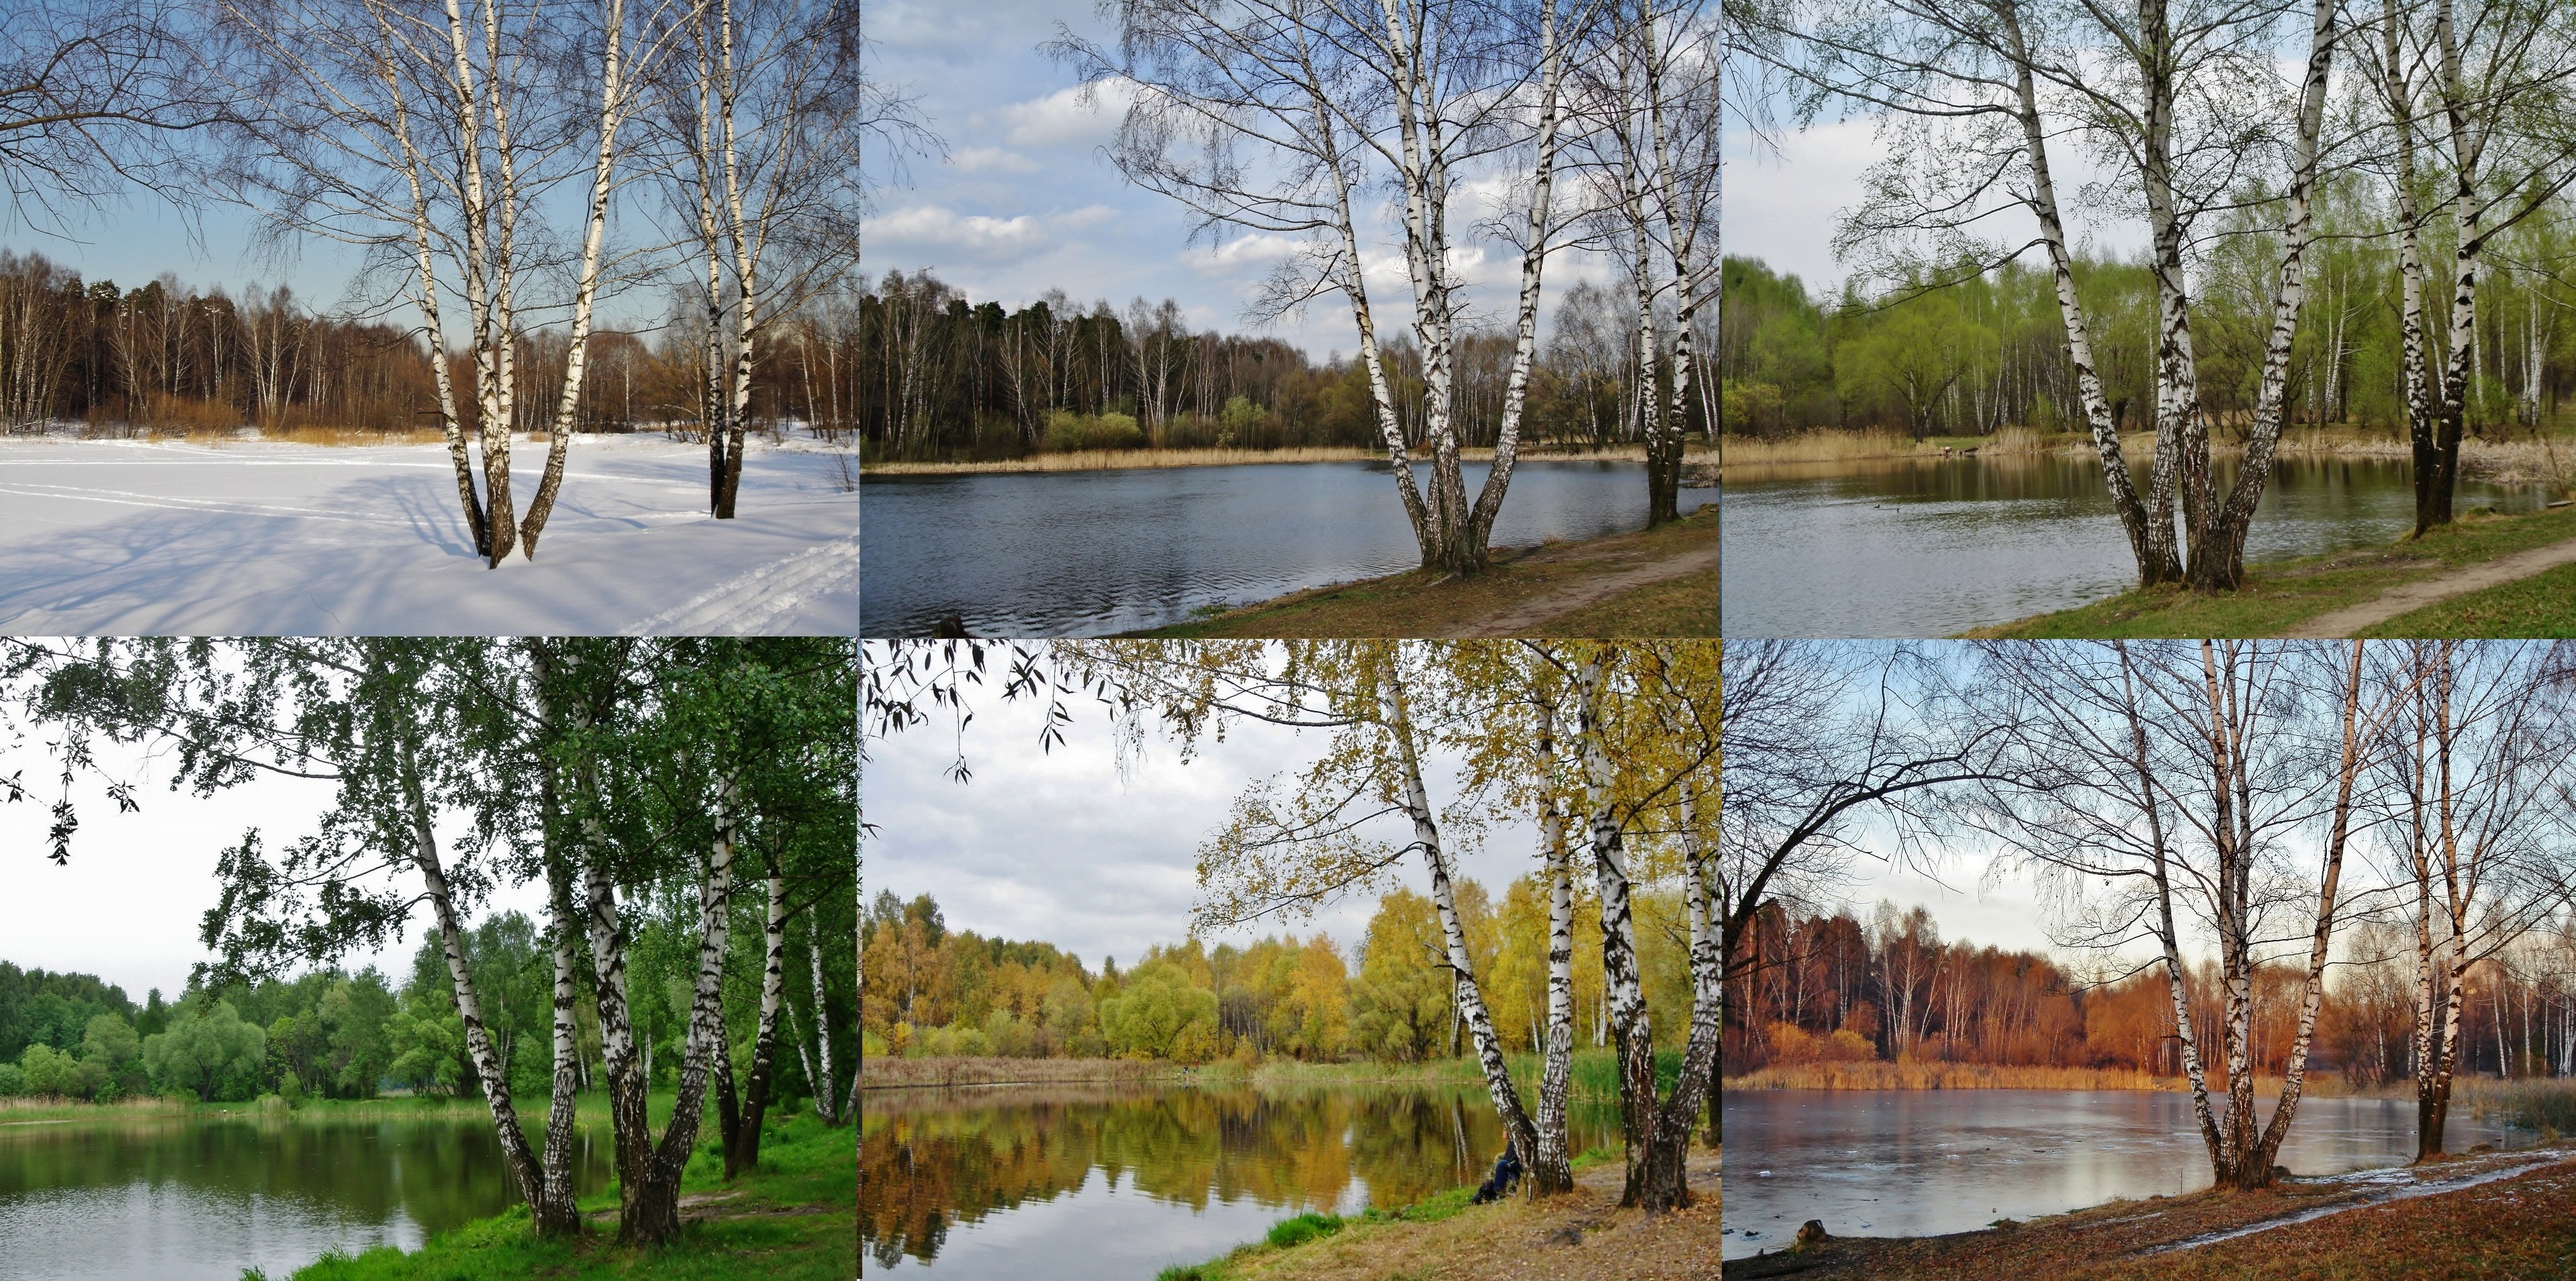 Seasons in russia. Пейзаж по временам года. Пейзаж в Разное время года. Один пейзаж в разные времена года. Береза летом и осенью.